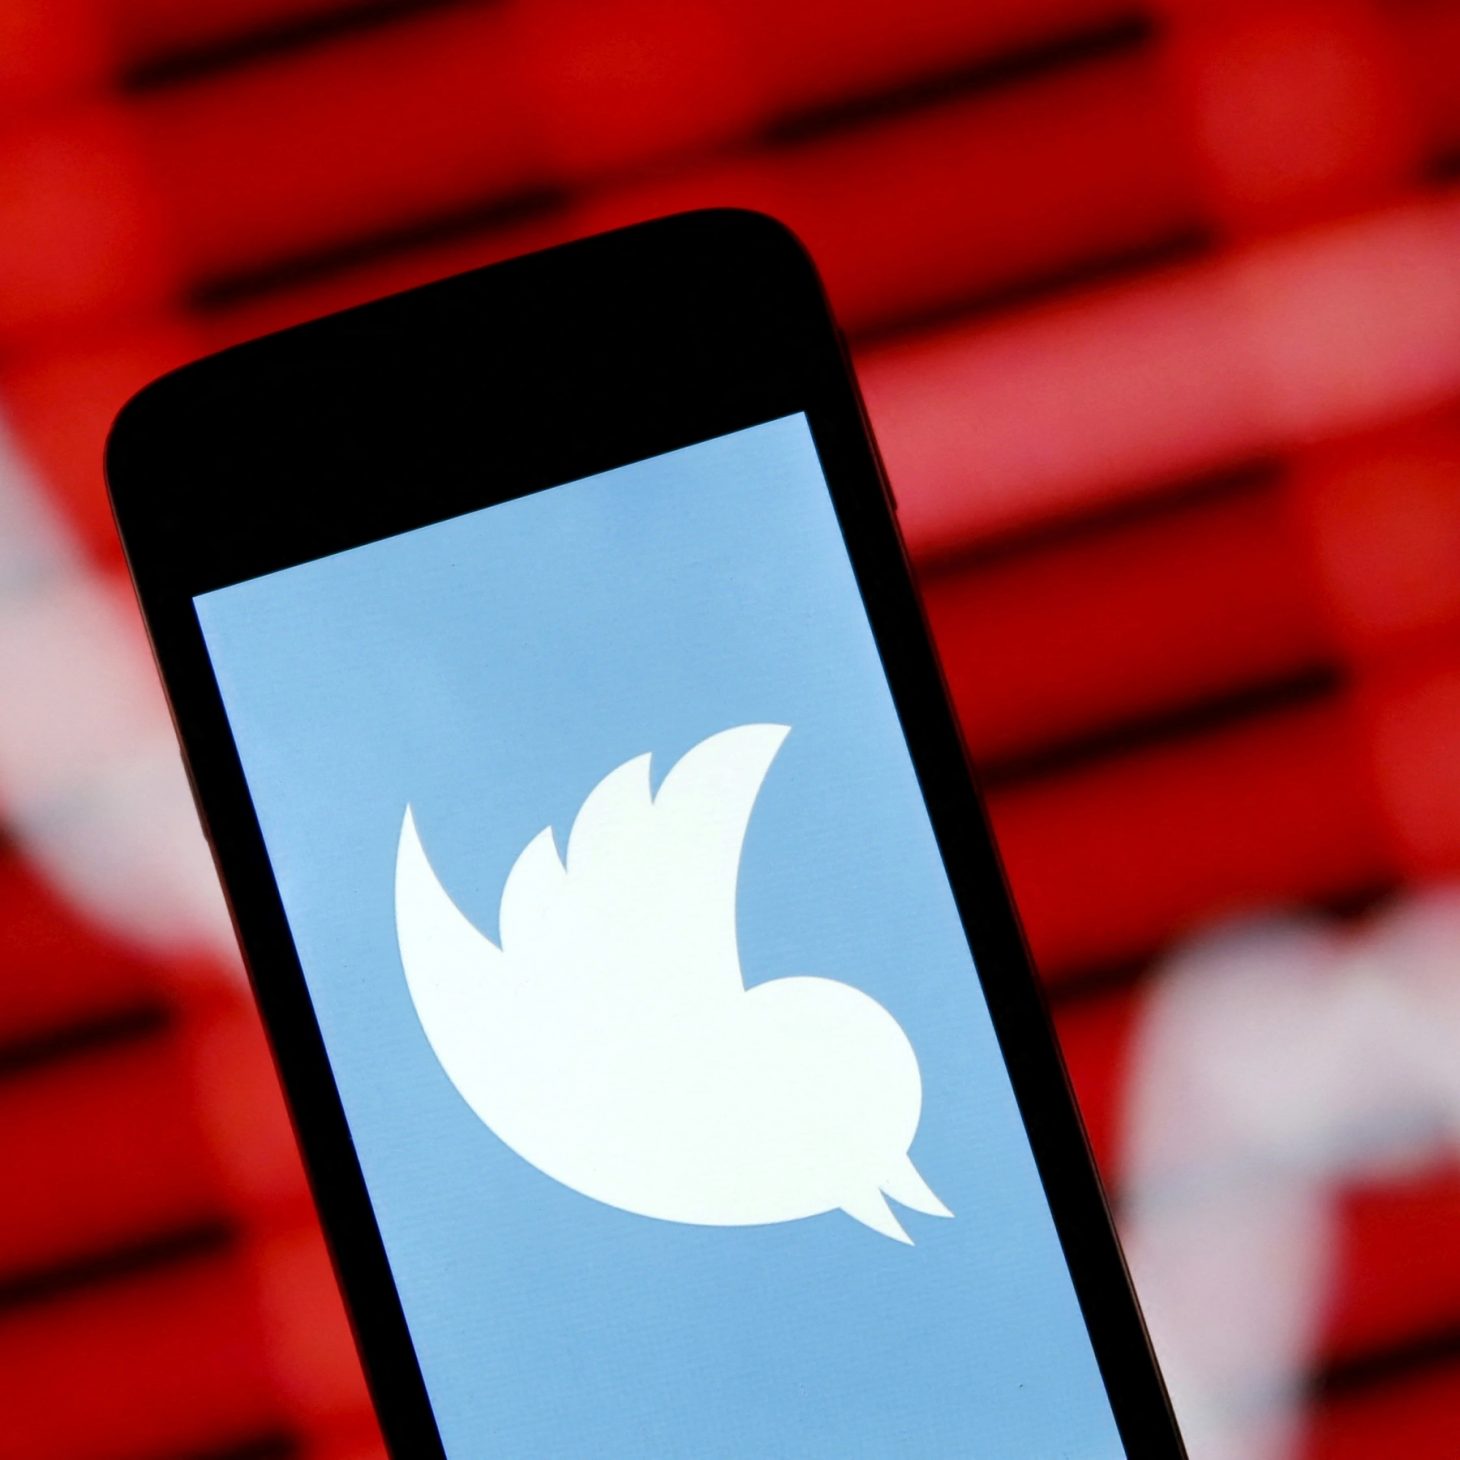 Giới lập pháp Hoa Kỳ chất vấn Twitter về cáo buộc không bảo vệ dữ liệu người dùng - Twitter 2